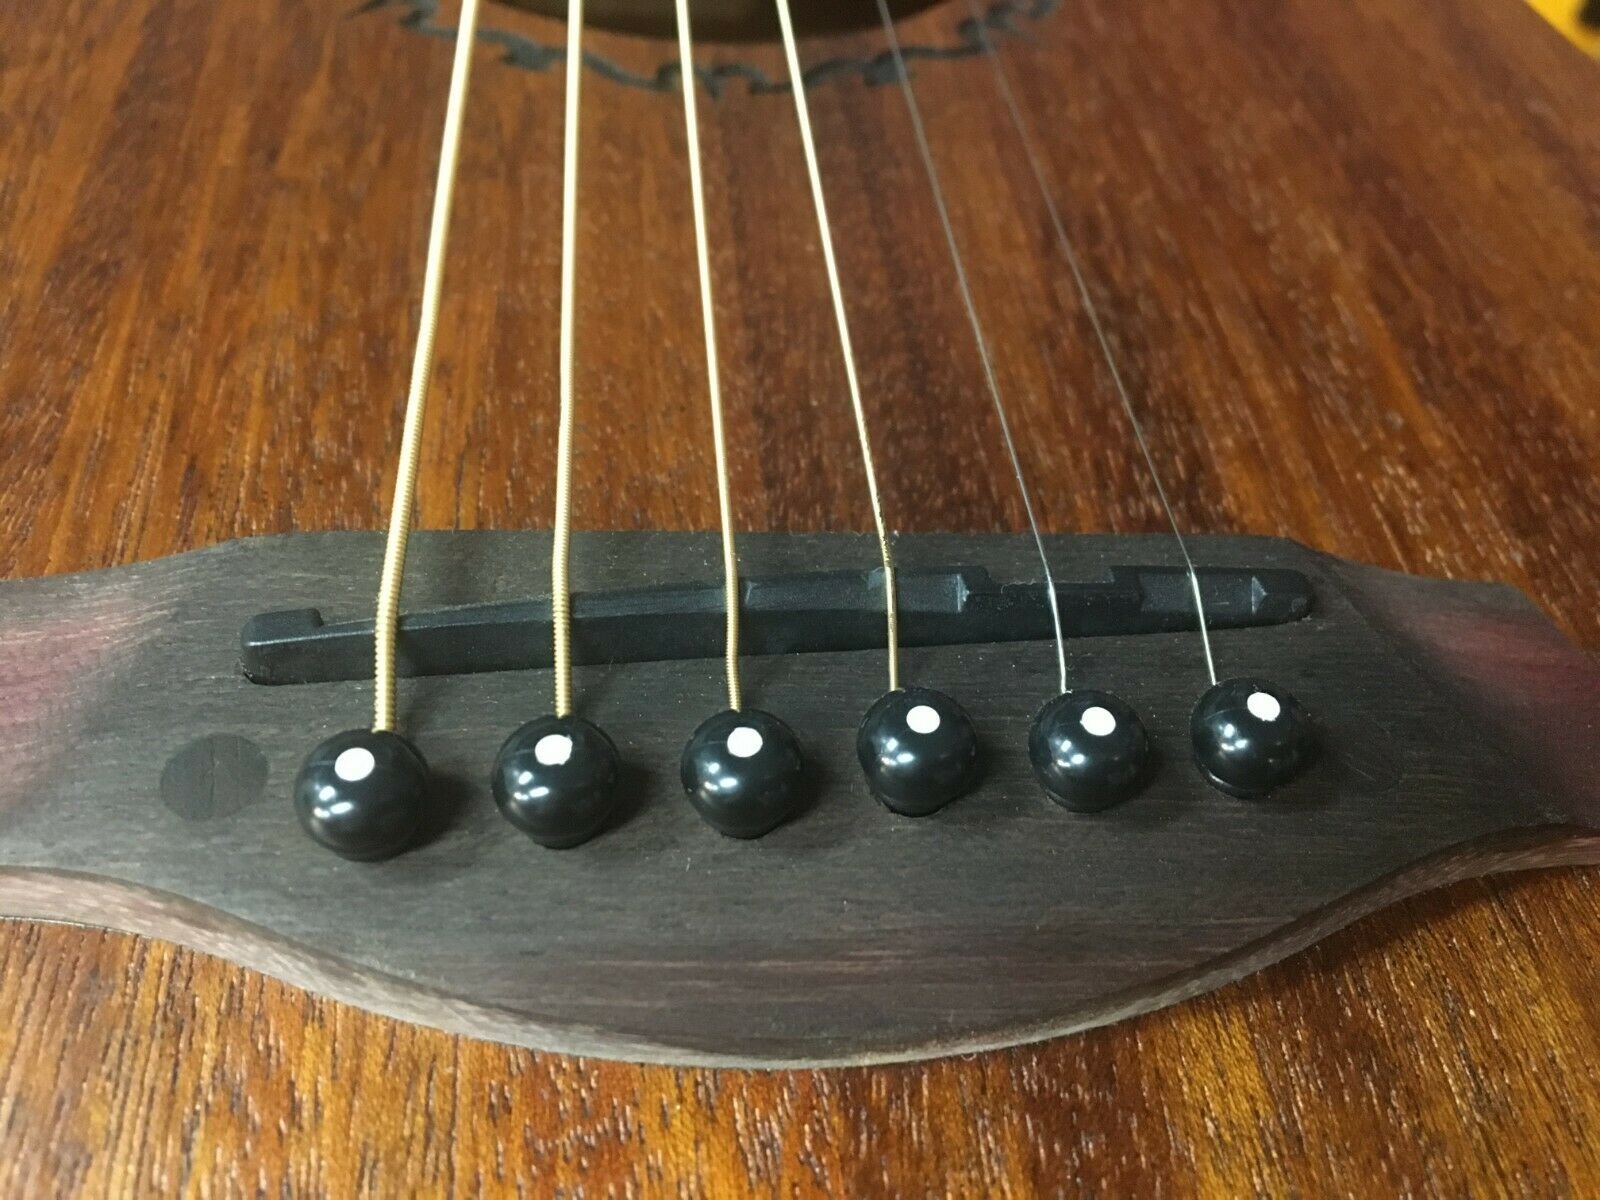 Haze A021BK 6PCS Acoustic Guitar Bridge Pins Plastic String End Peg - Black